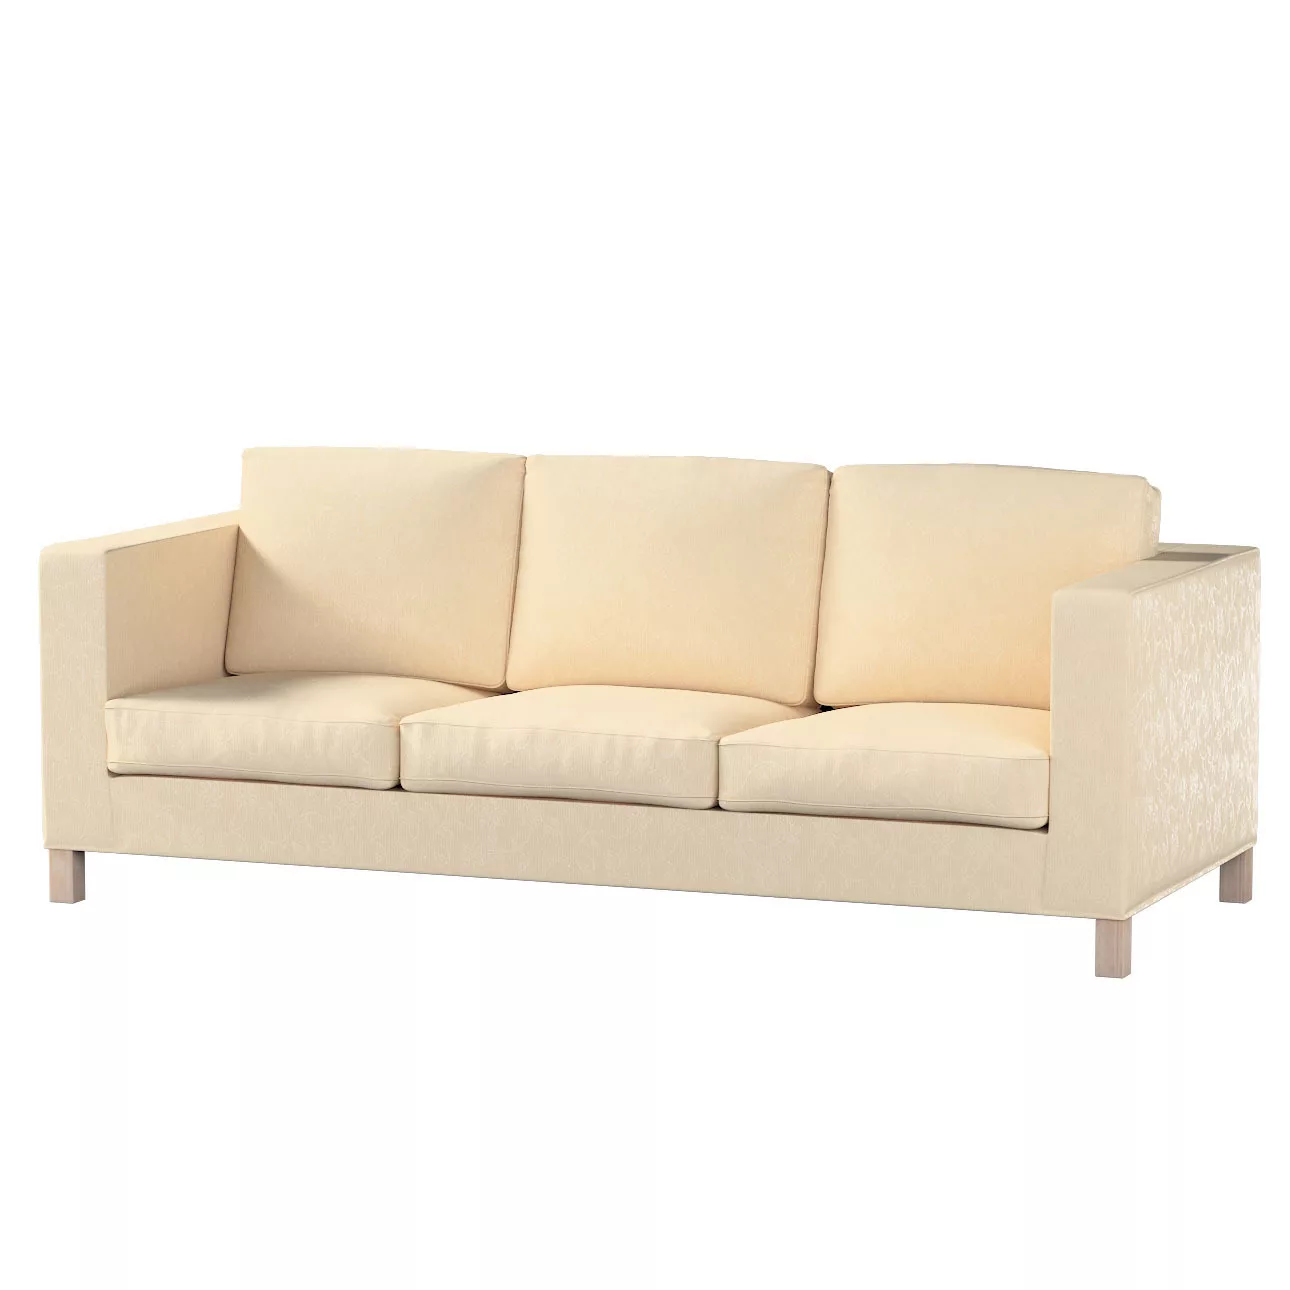 Bezug für Karlanda 3-Sitzer Sofa nicht ausklappbar, kurz, ecru, Bezug für K günstig online kaufen